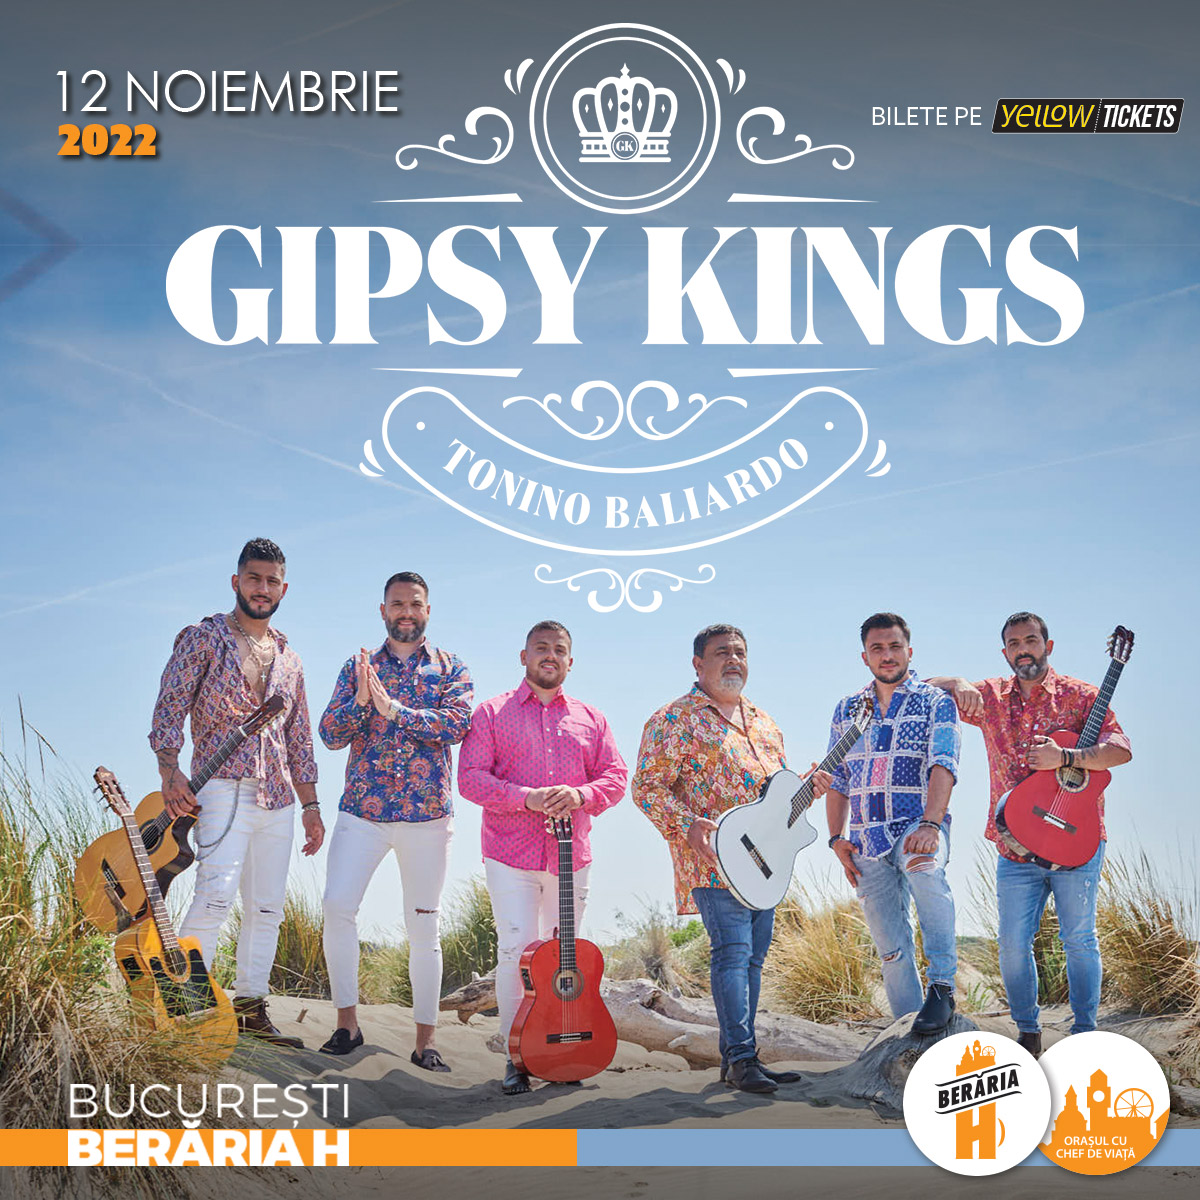 gipsy kings tour 2022 leipzig